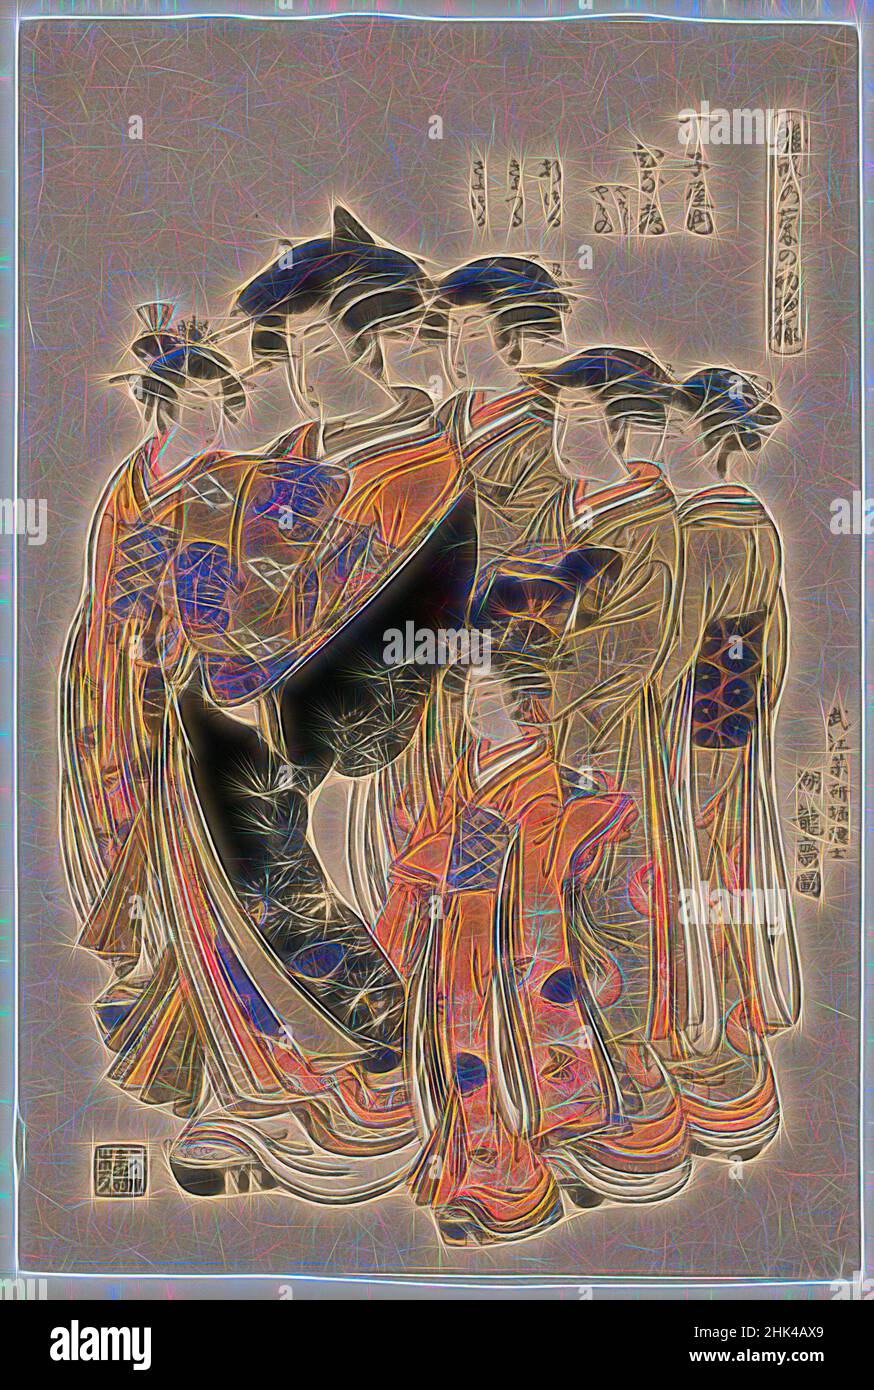 Inspiré par Hinazuru, une beauté Yoshiwara de la maison de thé Chojiya avec cinq Attendants, Isoda Koryusai, japonais, ca. 1766-1788, impression couleur sur papier, Japon, env. 1777, période Edo, 15 1/2 x 10 1/2 po., 39,4 x 26,7 cm, réimaginé par Artotop. L'art classique réinventé avec une touche moderne. Conception de lumière chaleureuse et gaie, de luminosité et de rayonnement de lumière. La photographie s'inspire du surréalisme et du futurisme, embrassant l'énergie dynamique de la technologie moderne, du mouvement, de la vitesse et révolutionne la culture Banque D'Images